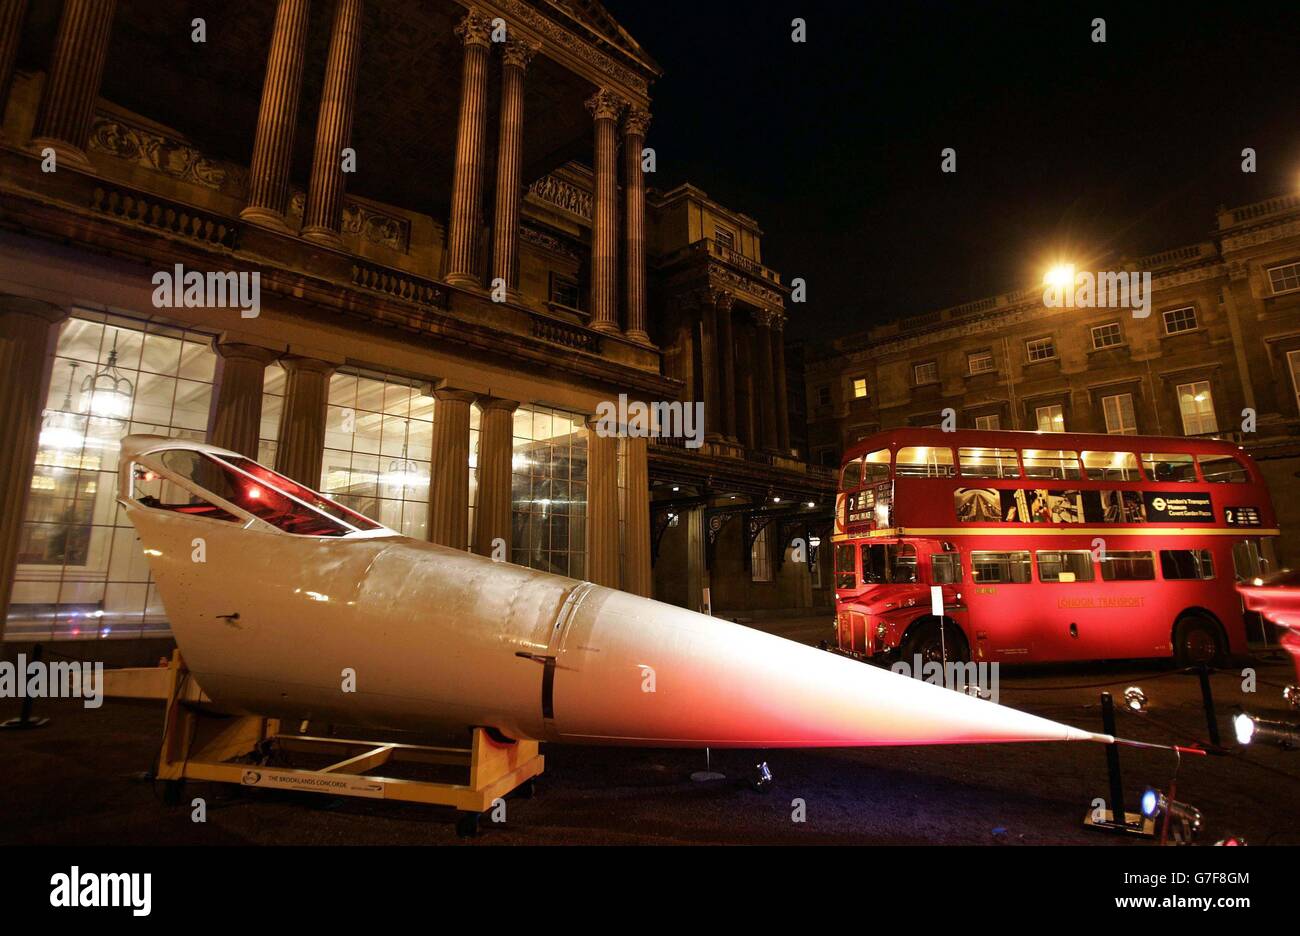 Un tradizionale autobus rosso London Routemaster e un cono di naso da un jet supersonico Concorde adornano il cortile a Buckingham Palace, Londra. Gli articoli saranno inclusi in una vetrina presso il palazzo di iconici disegni britannici come parte di una serie di giornate a tema ospitate dalla regina Elisabetta britannica e dal duca di Edimburgo per segnare il contributo dato dall'industria del design britannico. Foto Stock